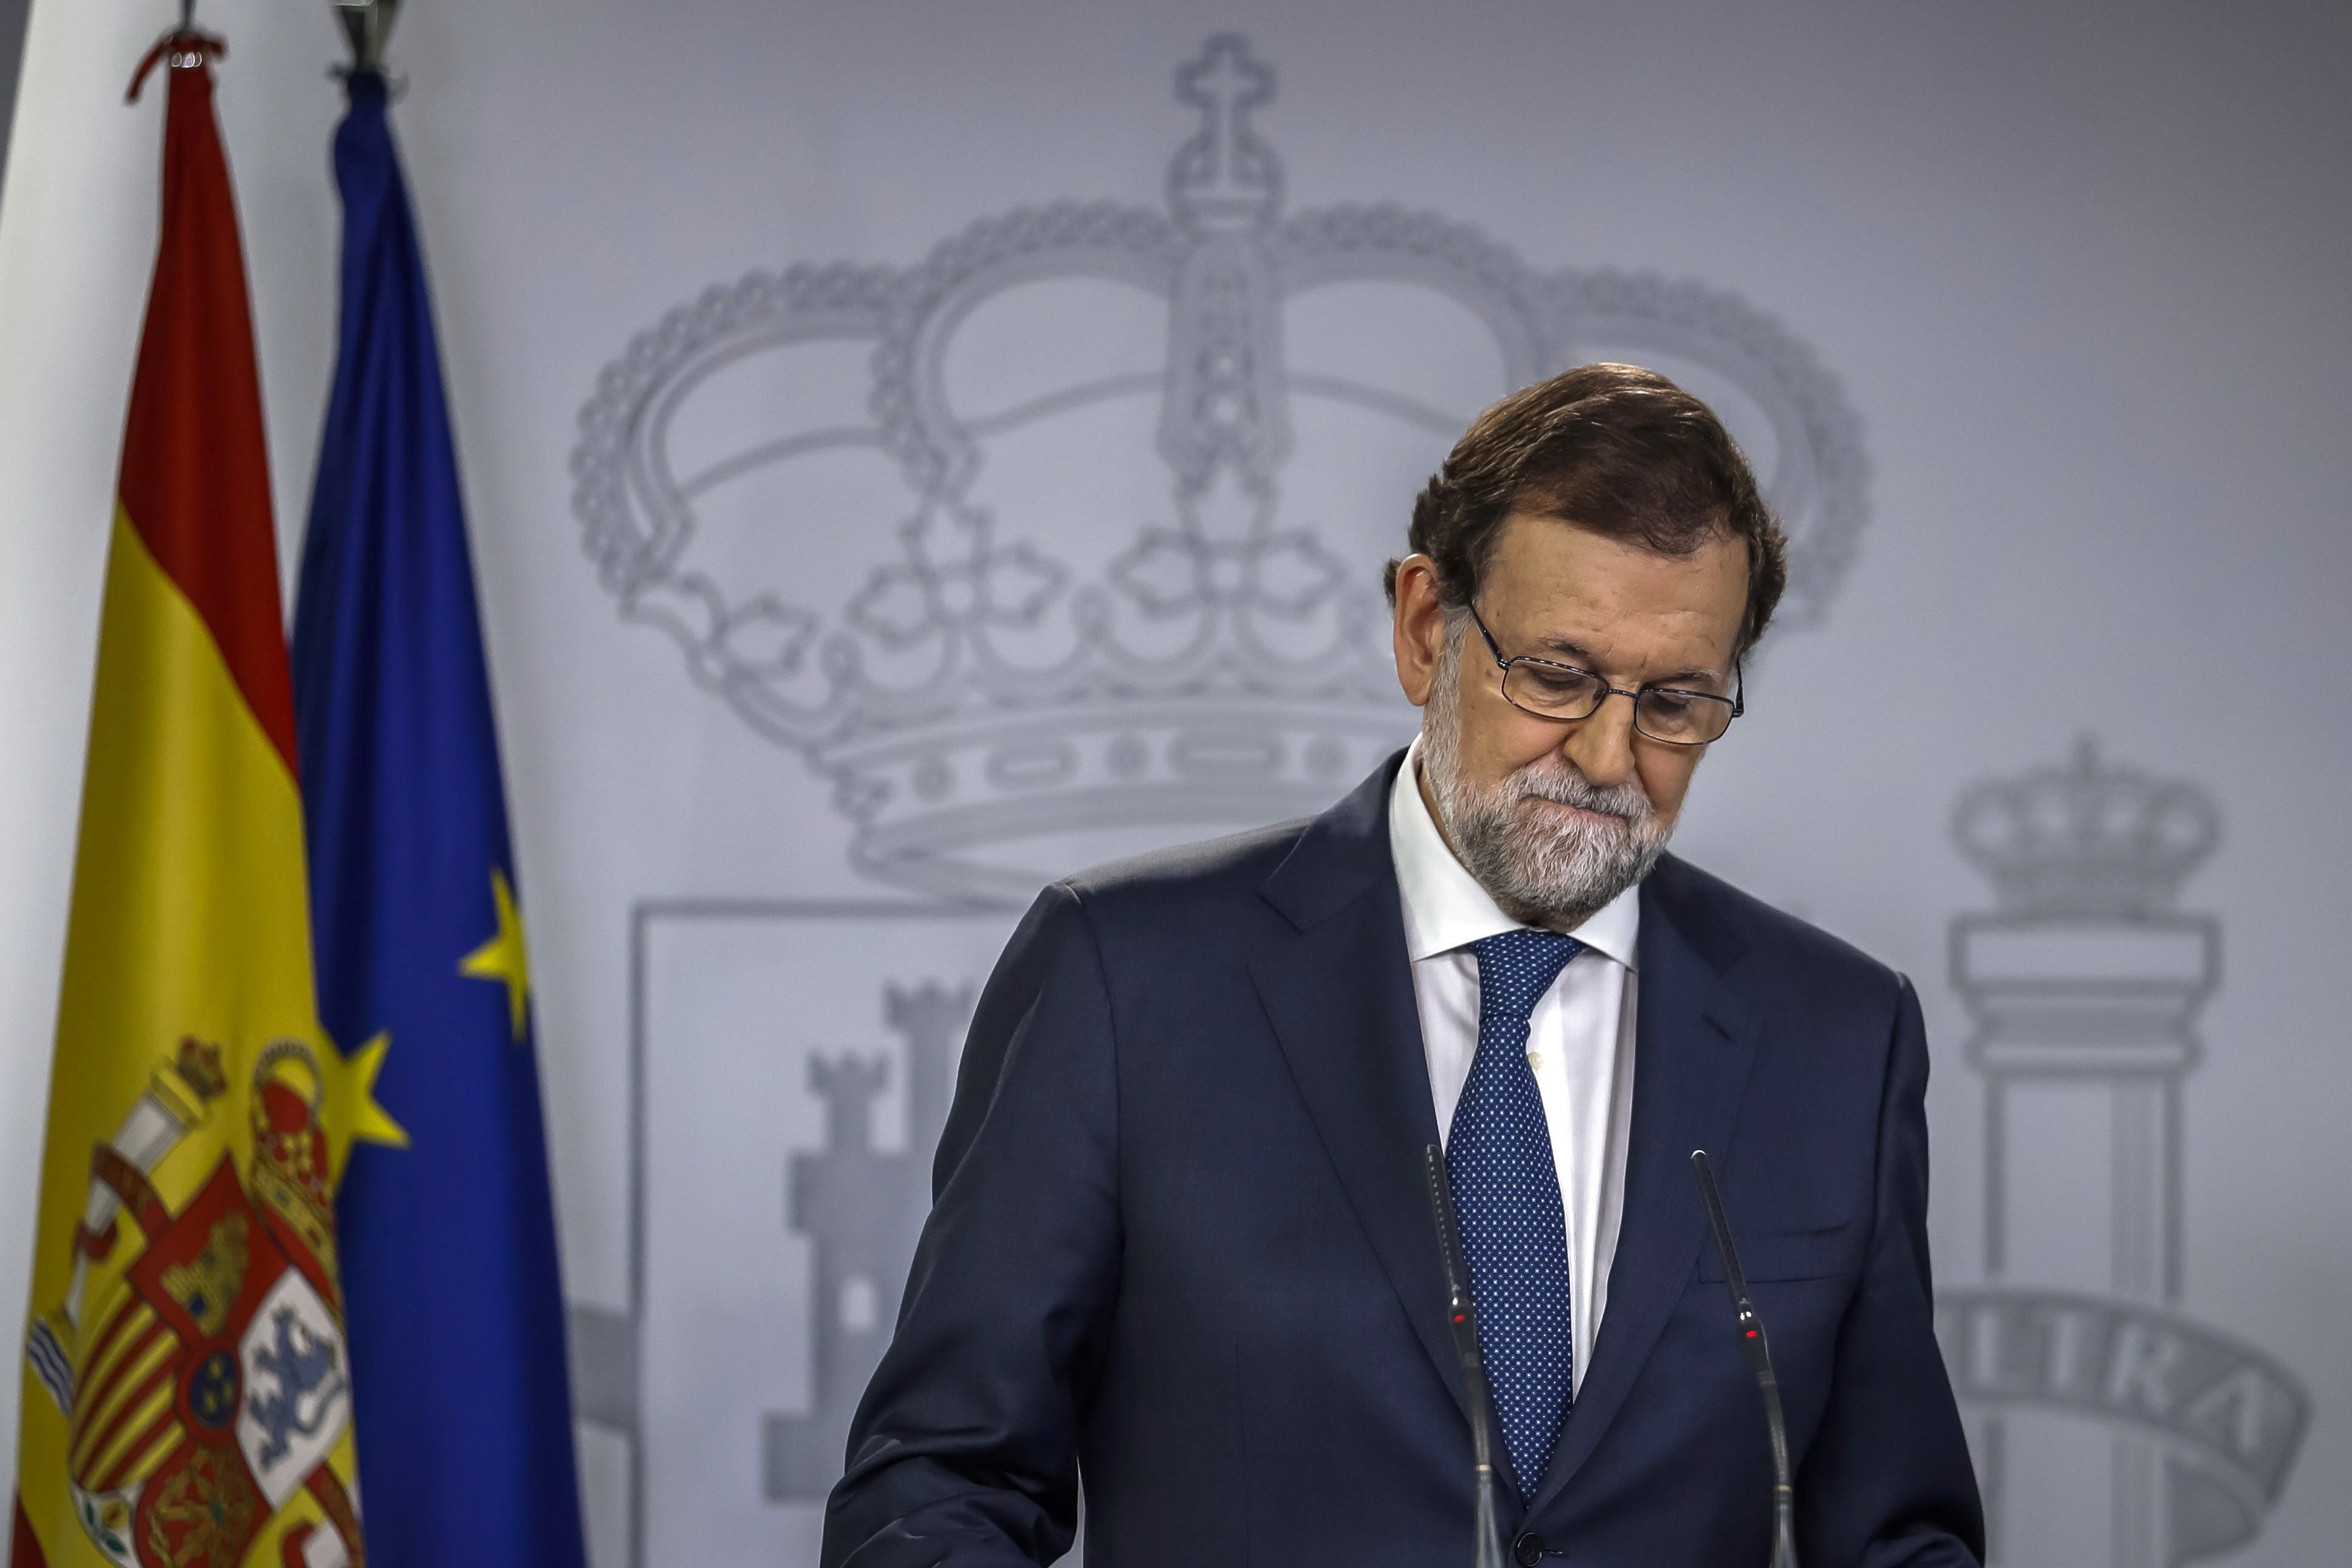 Rajoy se hunde tras el 1-O, según una encuesta